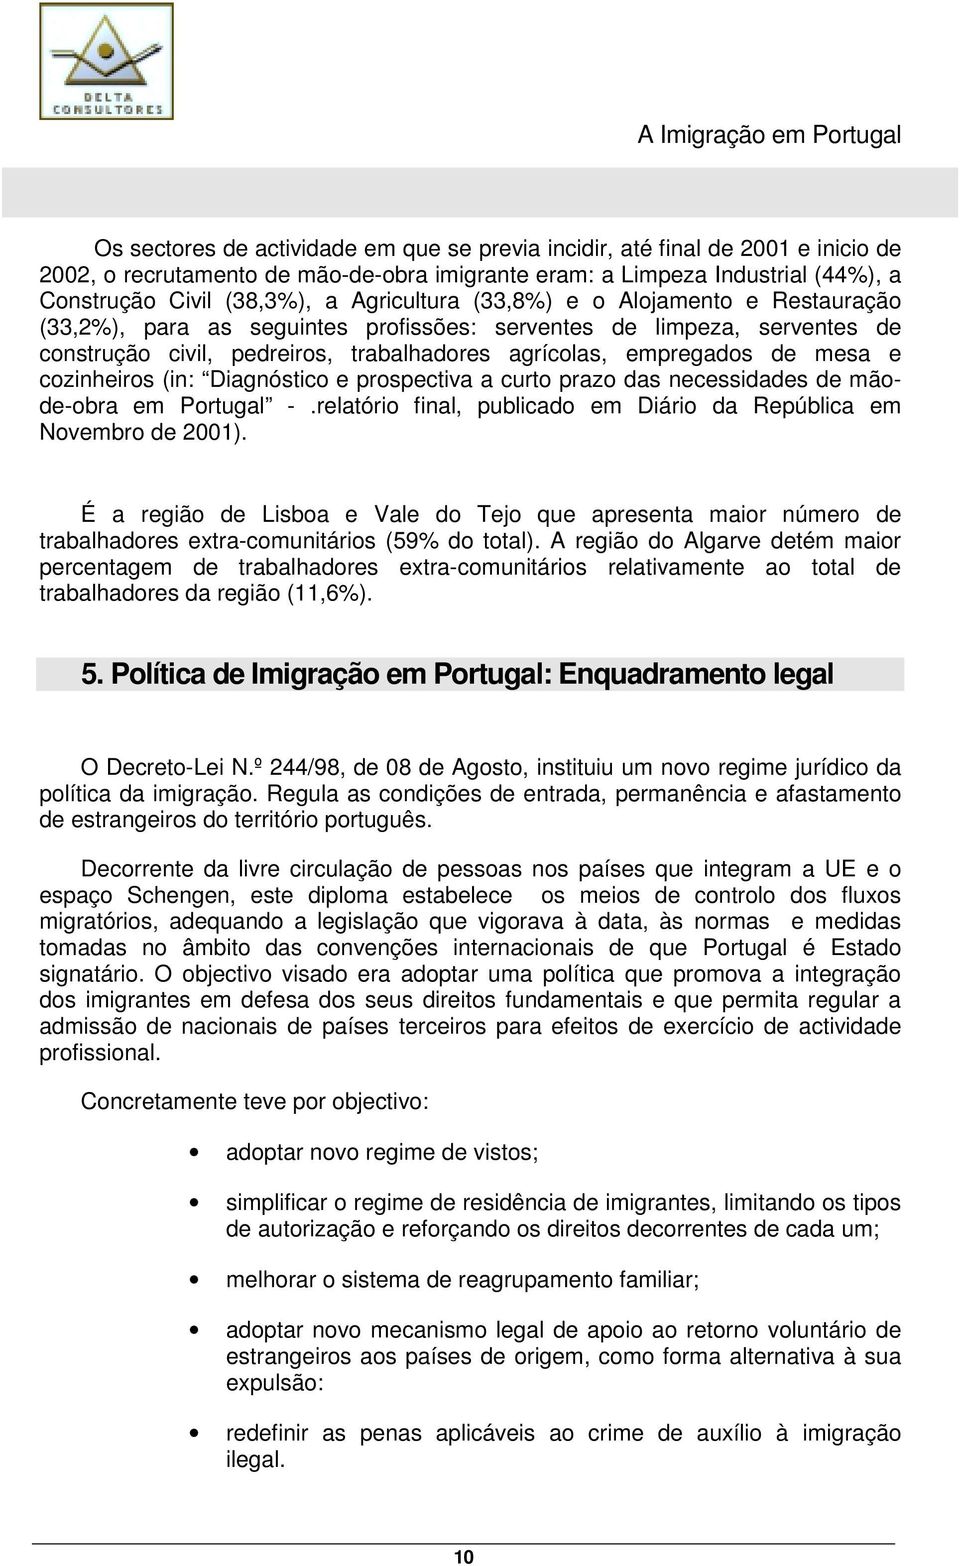 cozinheiros (in: Diagnóstico e prospectiva a curto prazo das necessidades de mãode-obra em Portugal -.relatório final, publicado em Diário da República em Novembro de 2001).